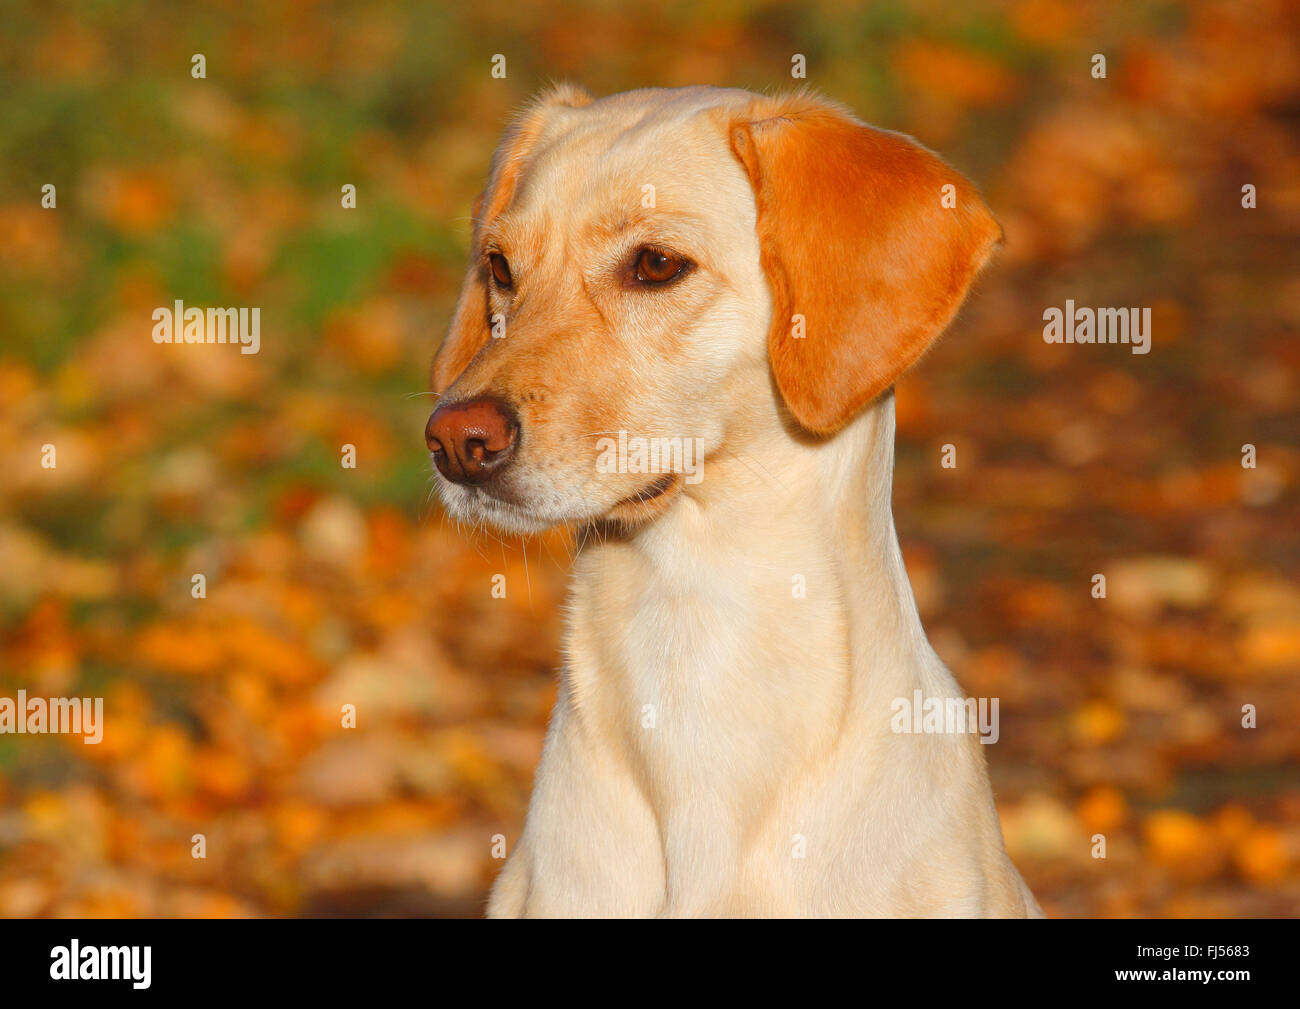 Mischling Hund (Canis Lupus F. Familiaris), Magyar Vizsla Labrador  Mischling Hund sitzt im Herbstlaub, Porträt, Deutschland Stockfotografie -  Alamy